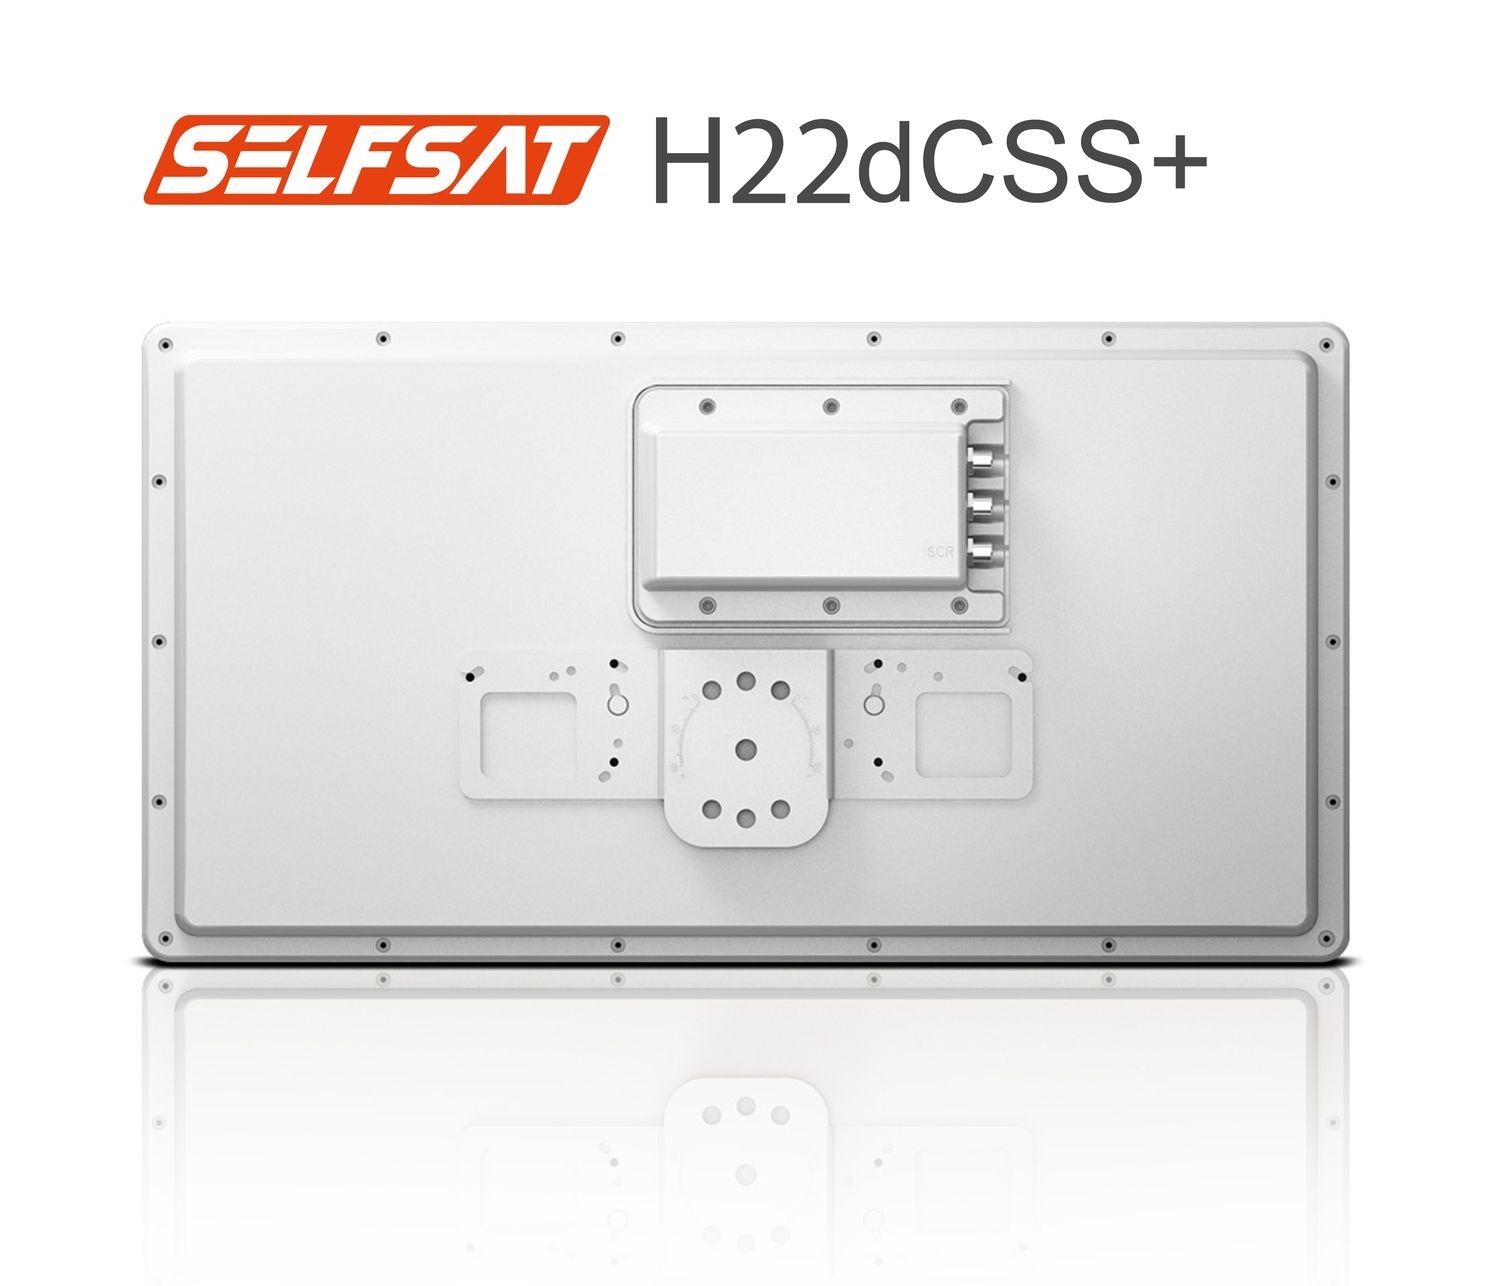 Selfsat H22dCSS+ Unicable 2 Antenne 24 Teilnehmer